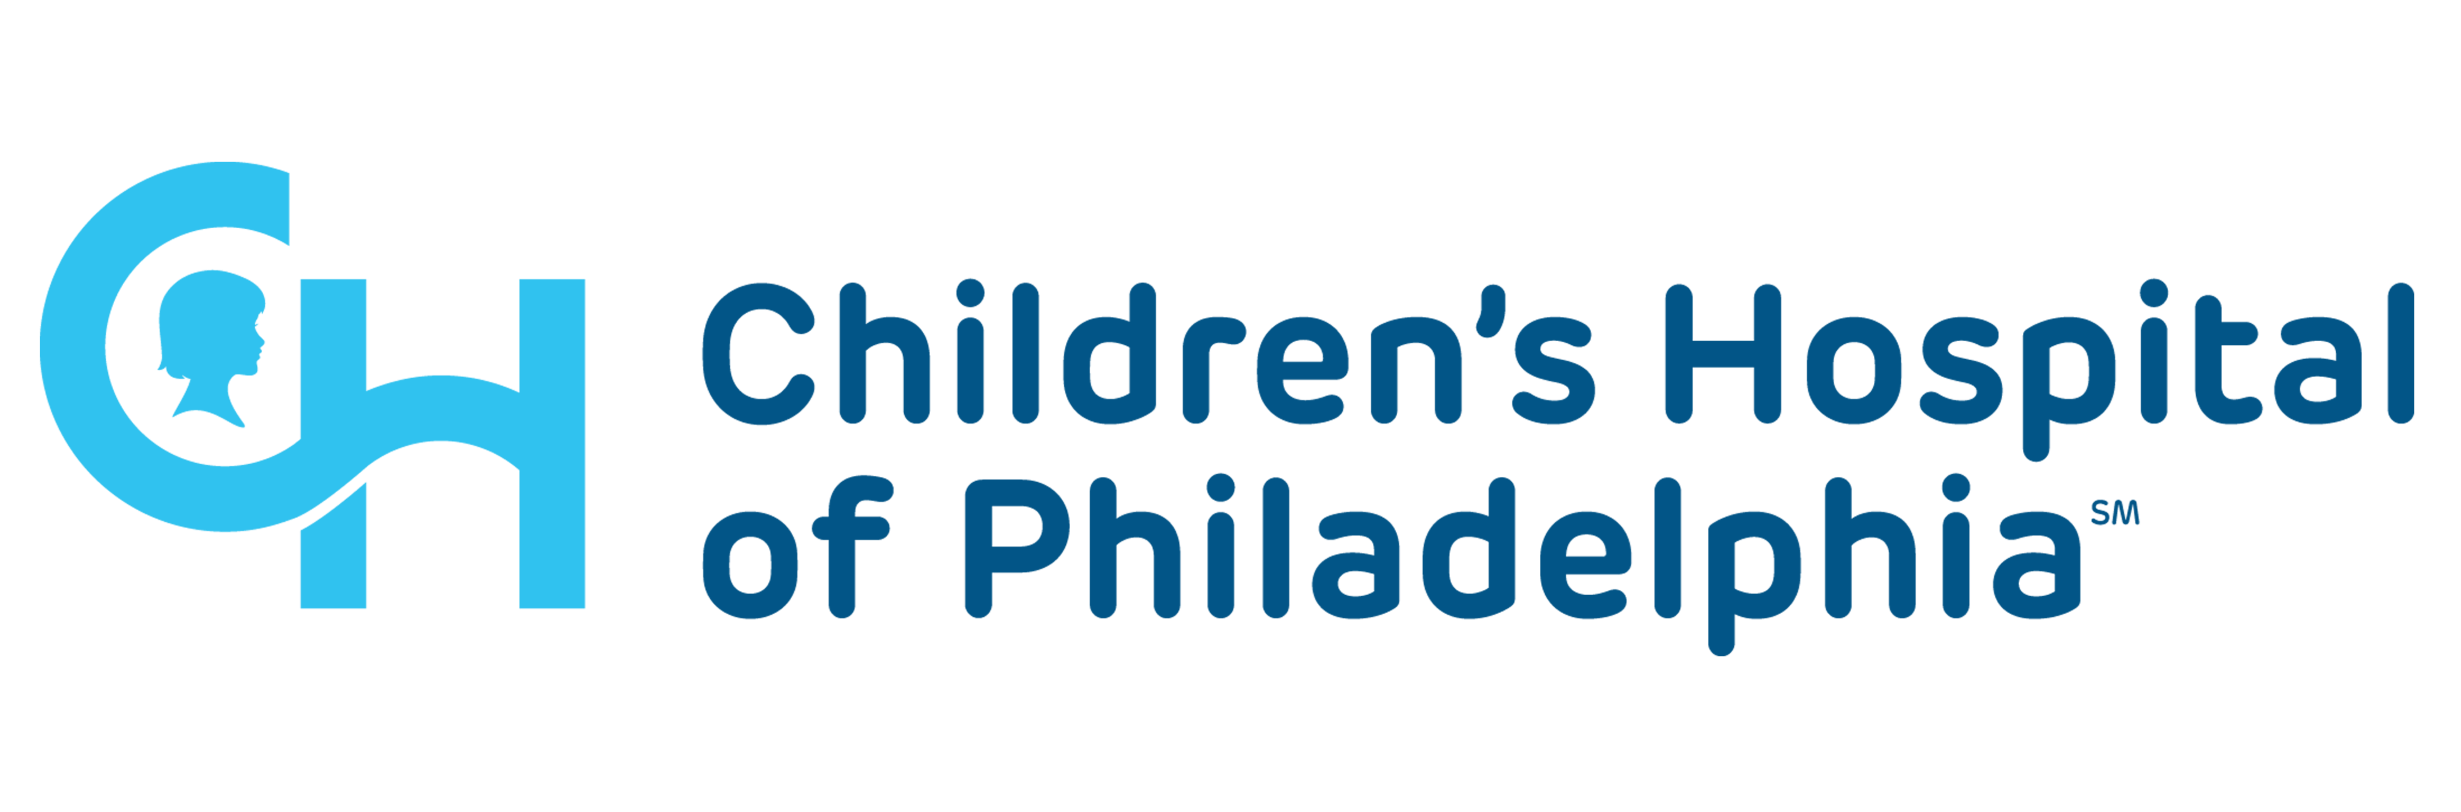 Children's hospital of phialdelphia logo